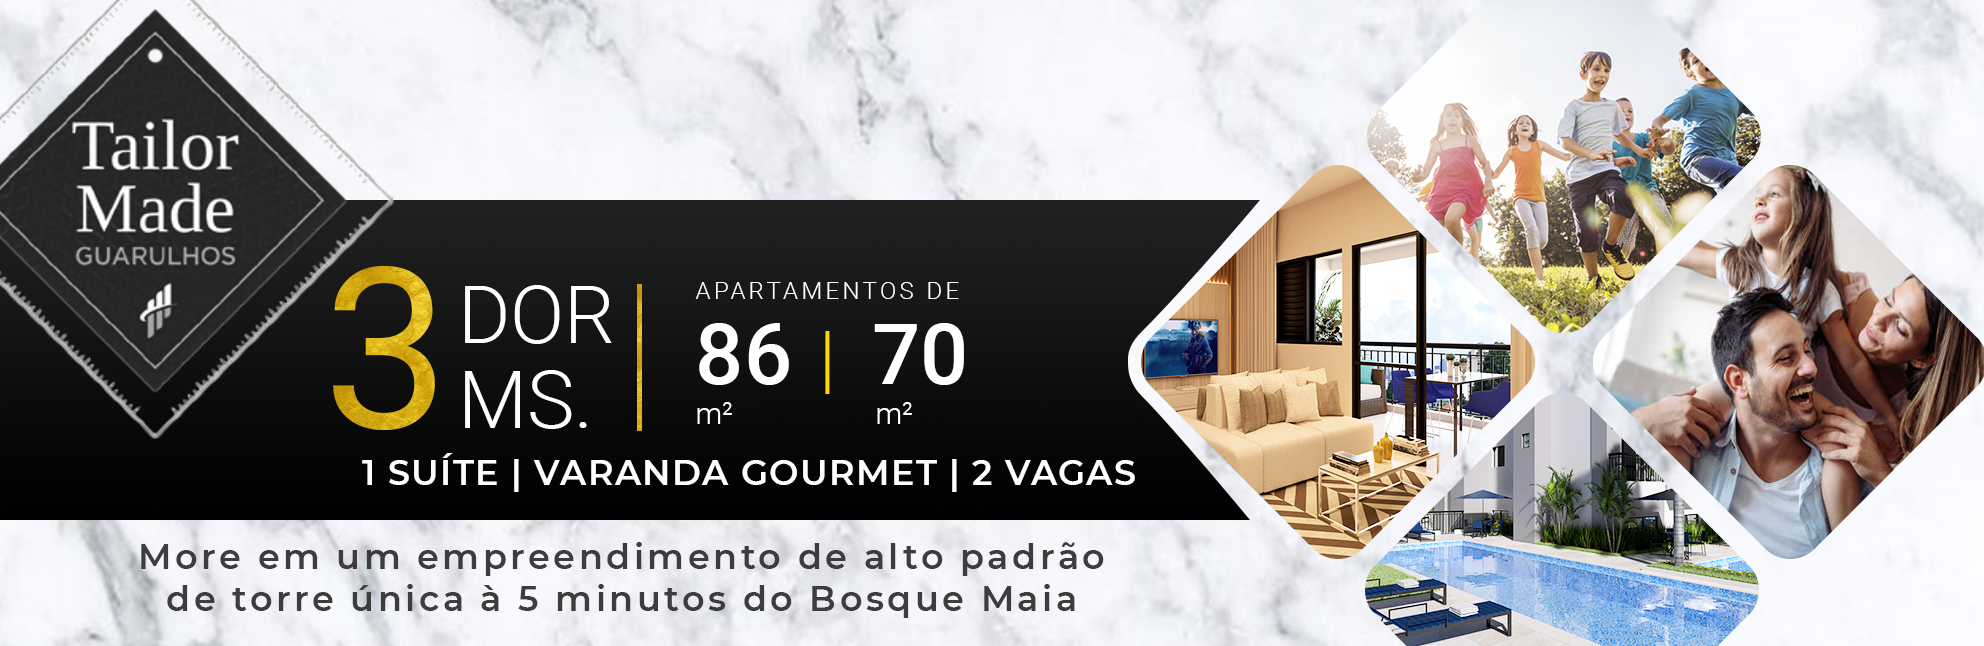 Tailor Made Bosque Maia | Apartamentos de 86 & 70 m² | 3 ou 2 dormitórios, 2 ou 1 suíte | Varanda Gourmet | 2 Vagas de garagem livres | Torre Única